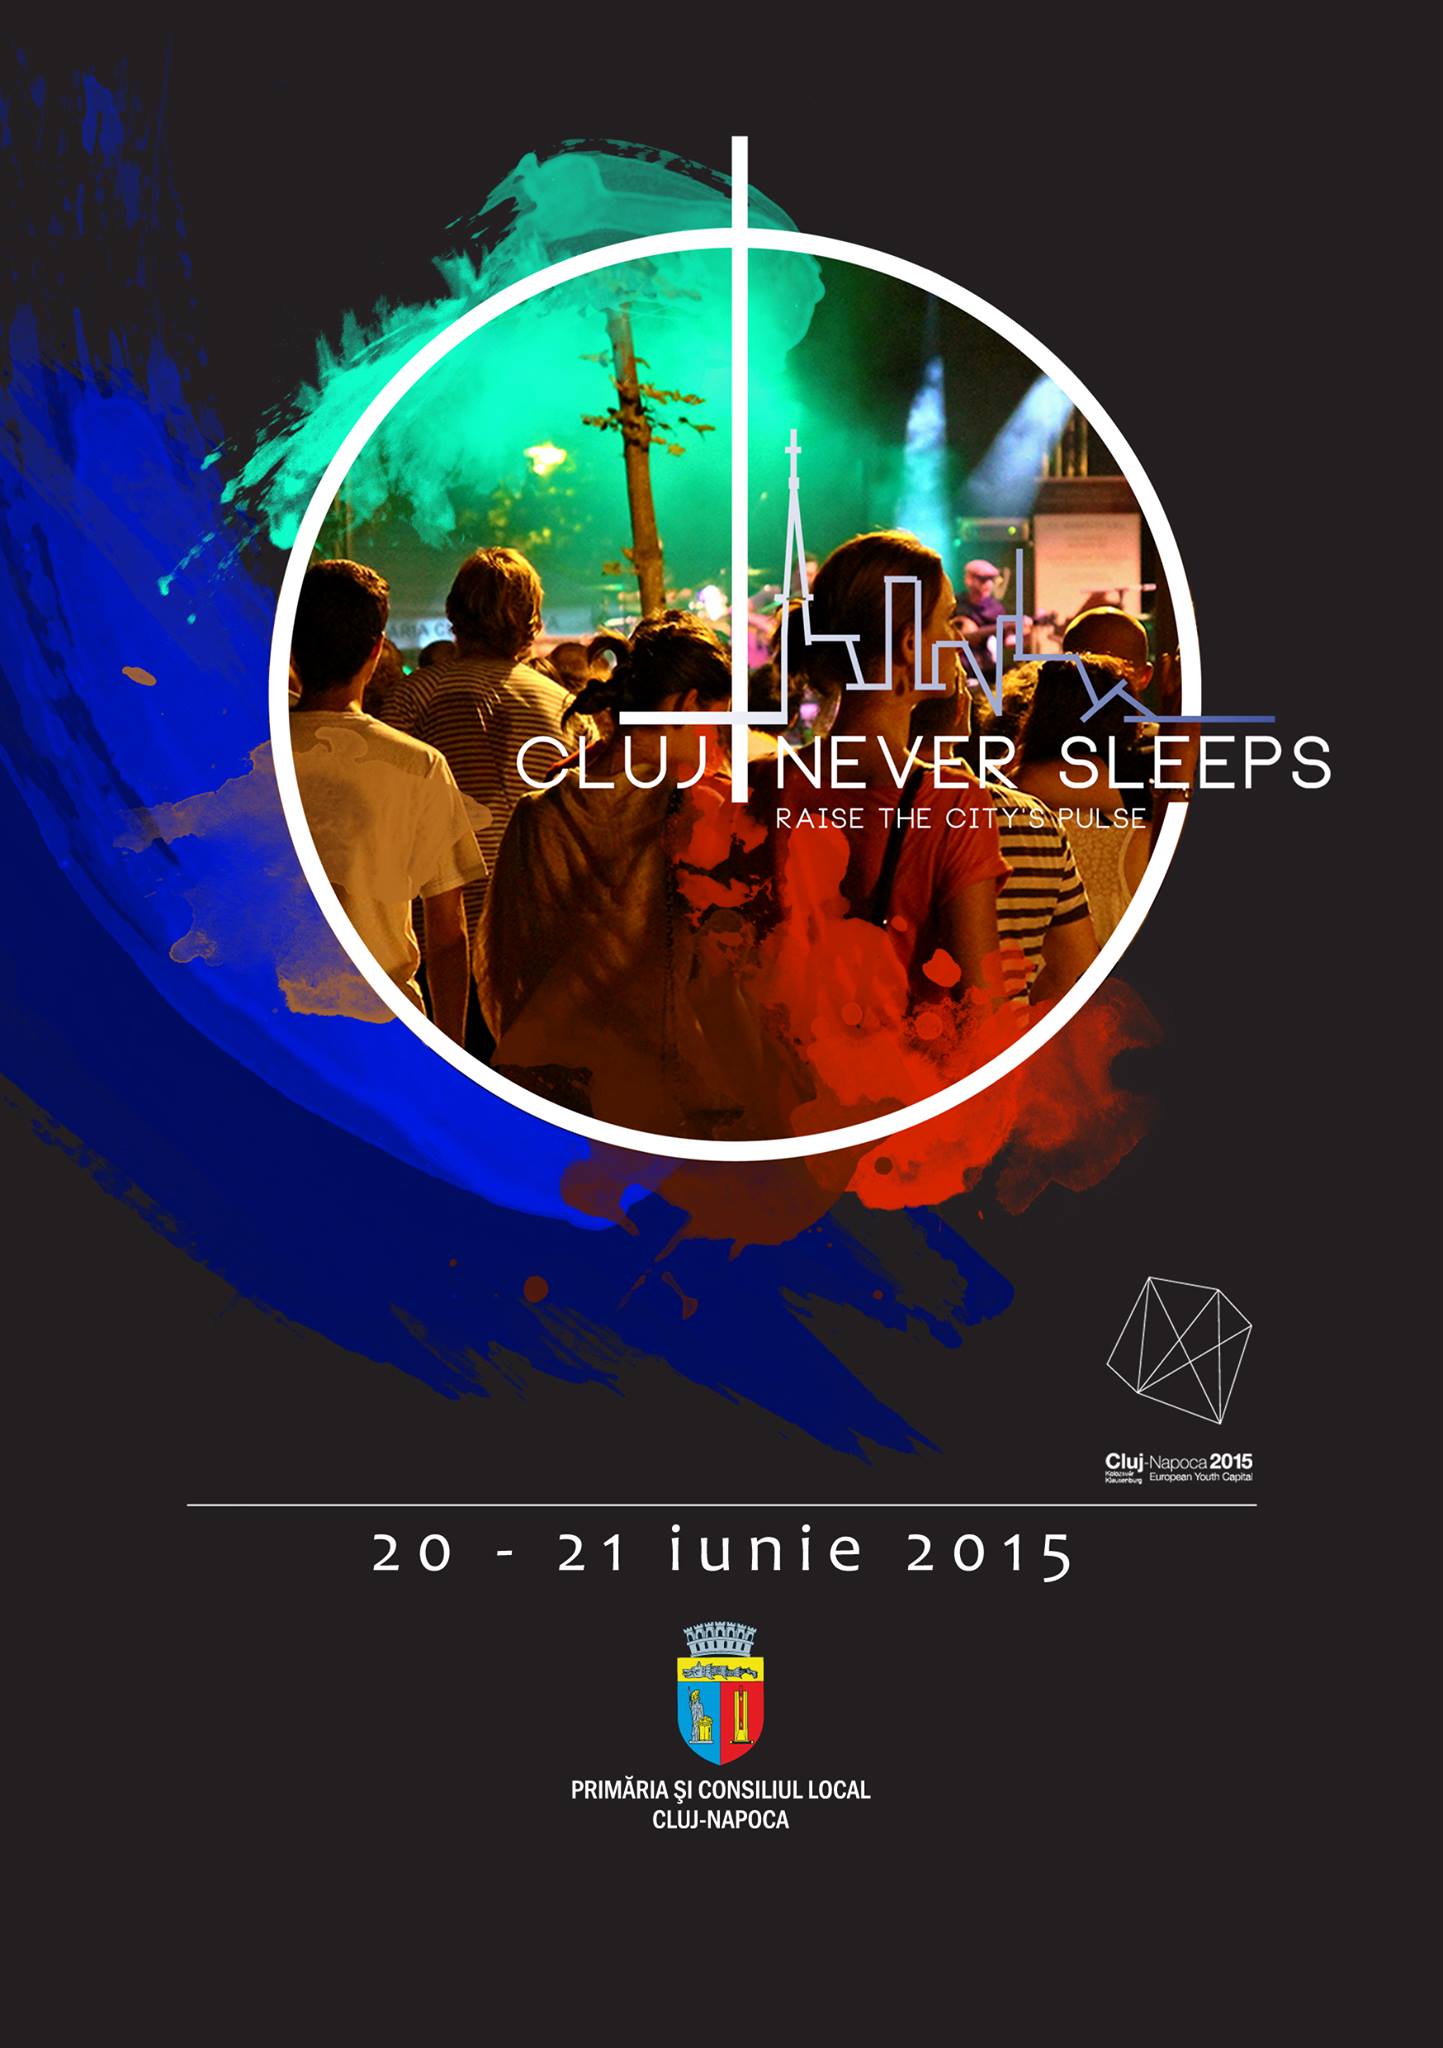 Pregătirile pentru Cluj Never Sleeps au început!